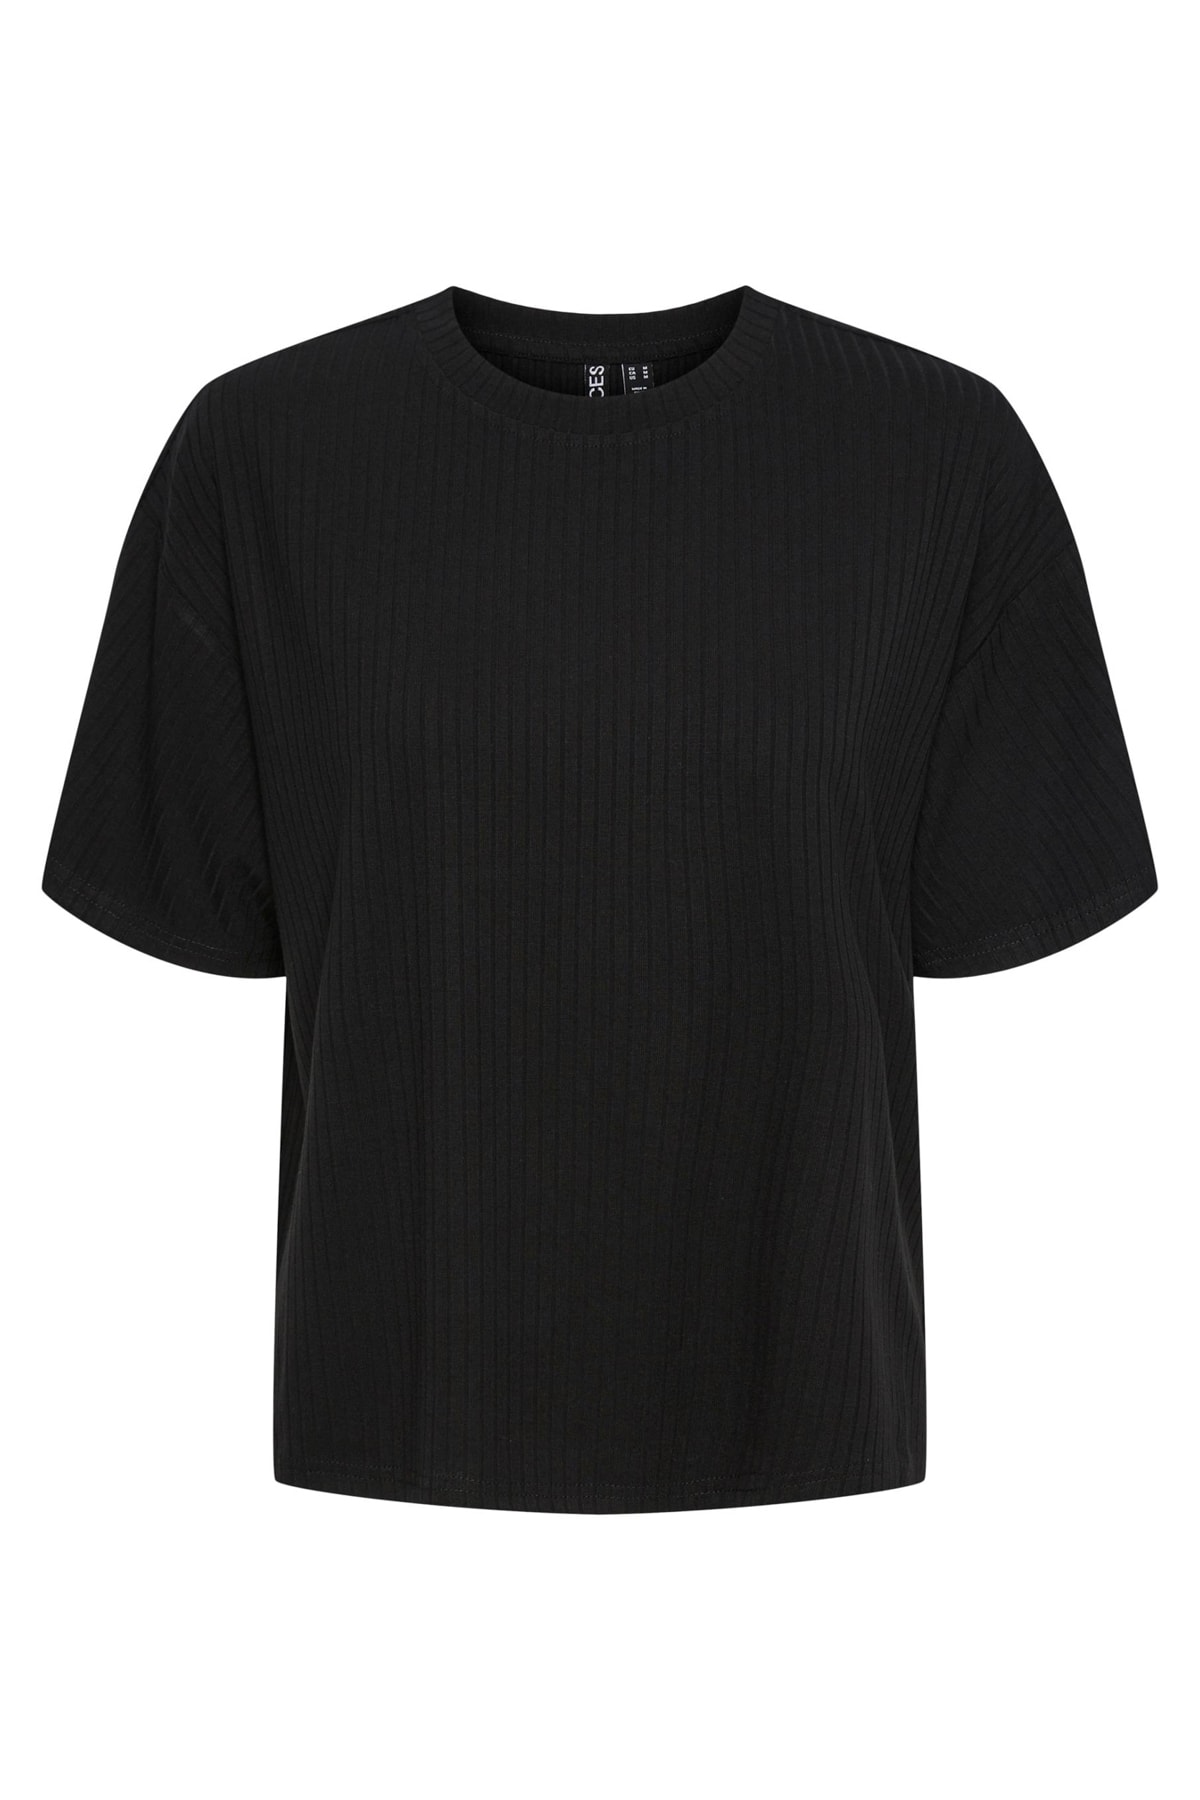 PIECES T-Shirt Schwarz Regular Fit Fast ausverkauft